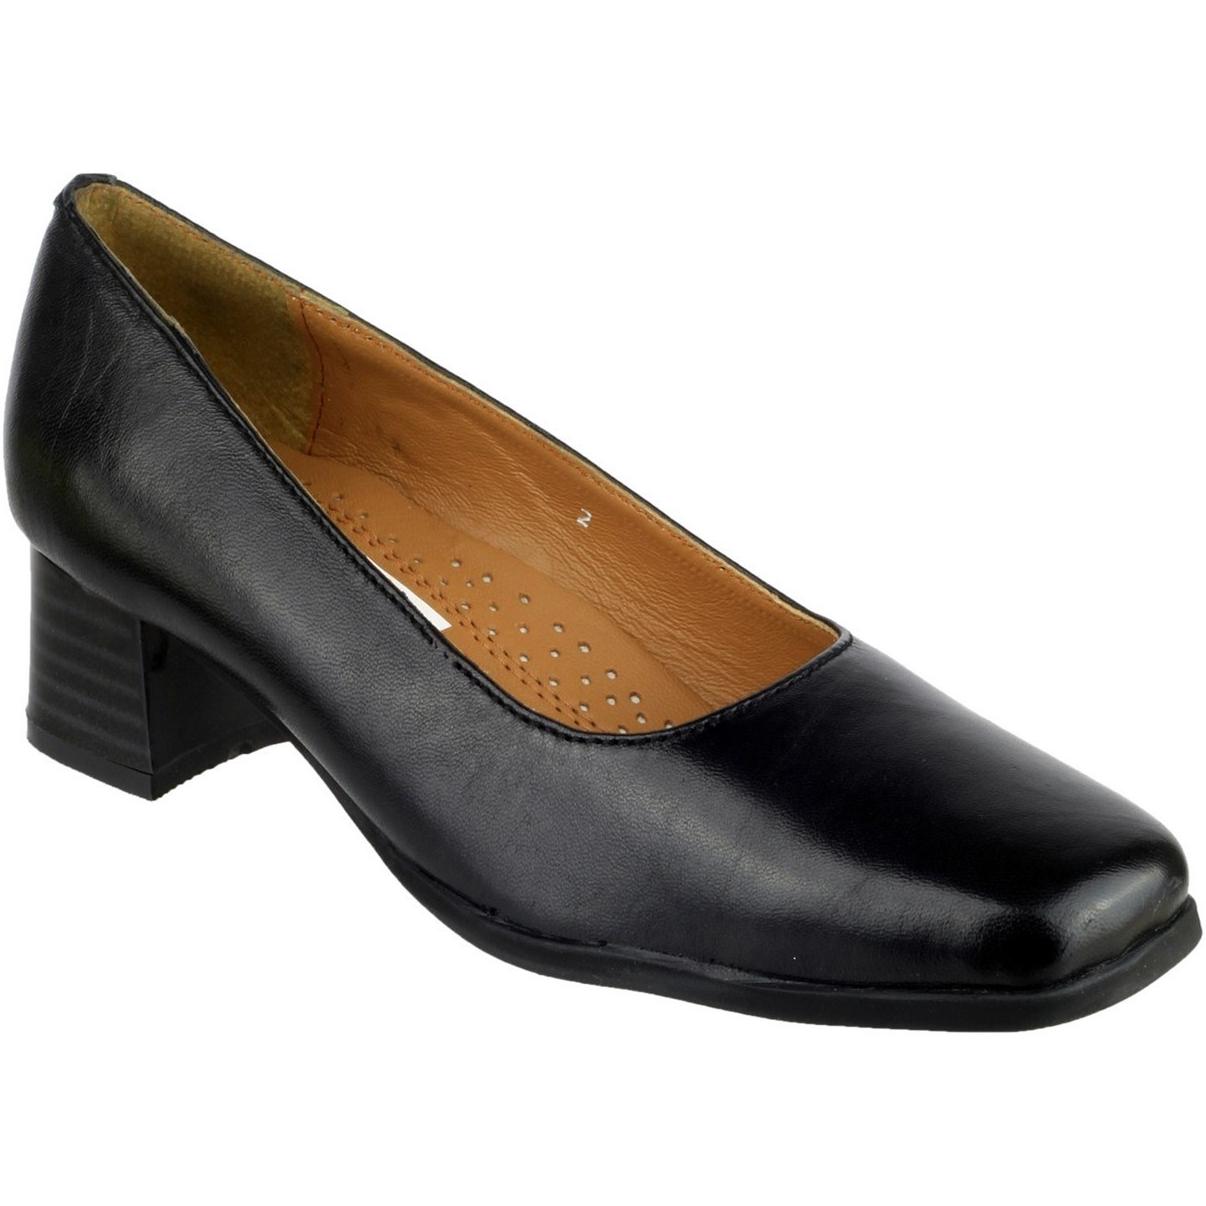 Amblers Walford Ladies Leather Court Heels